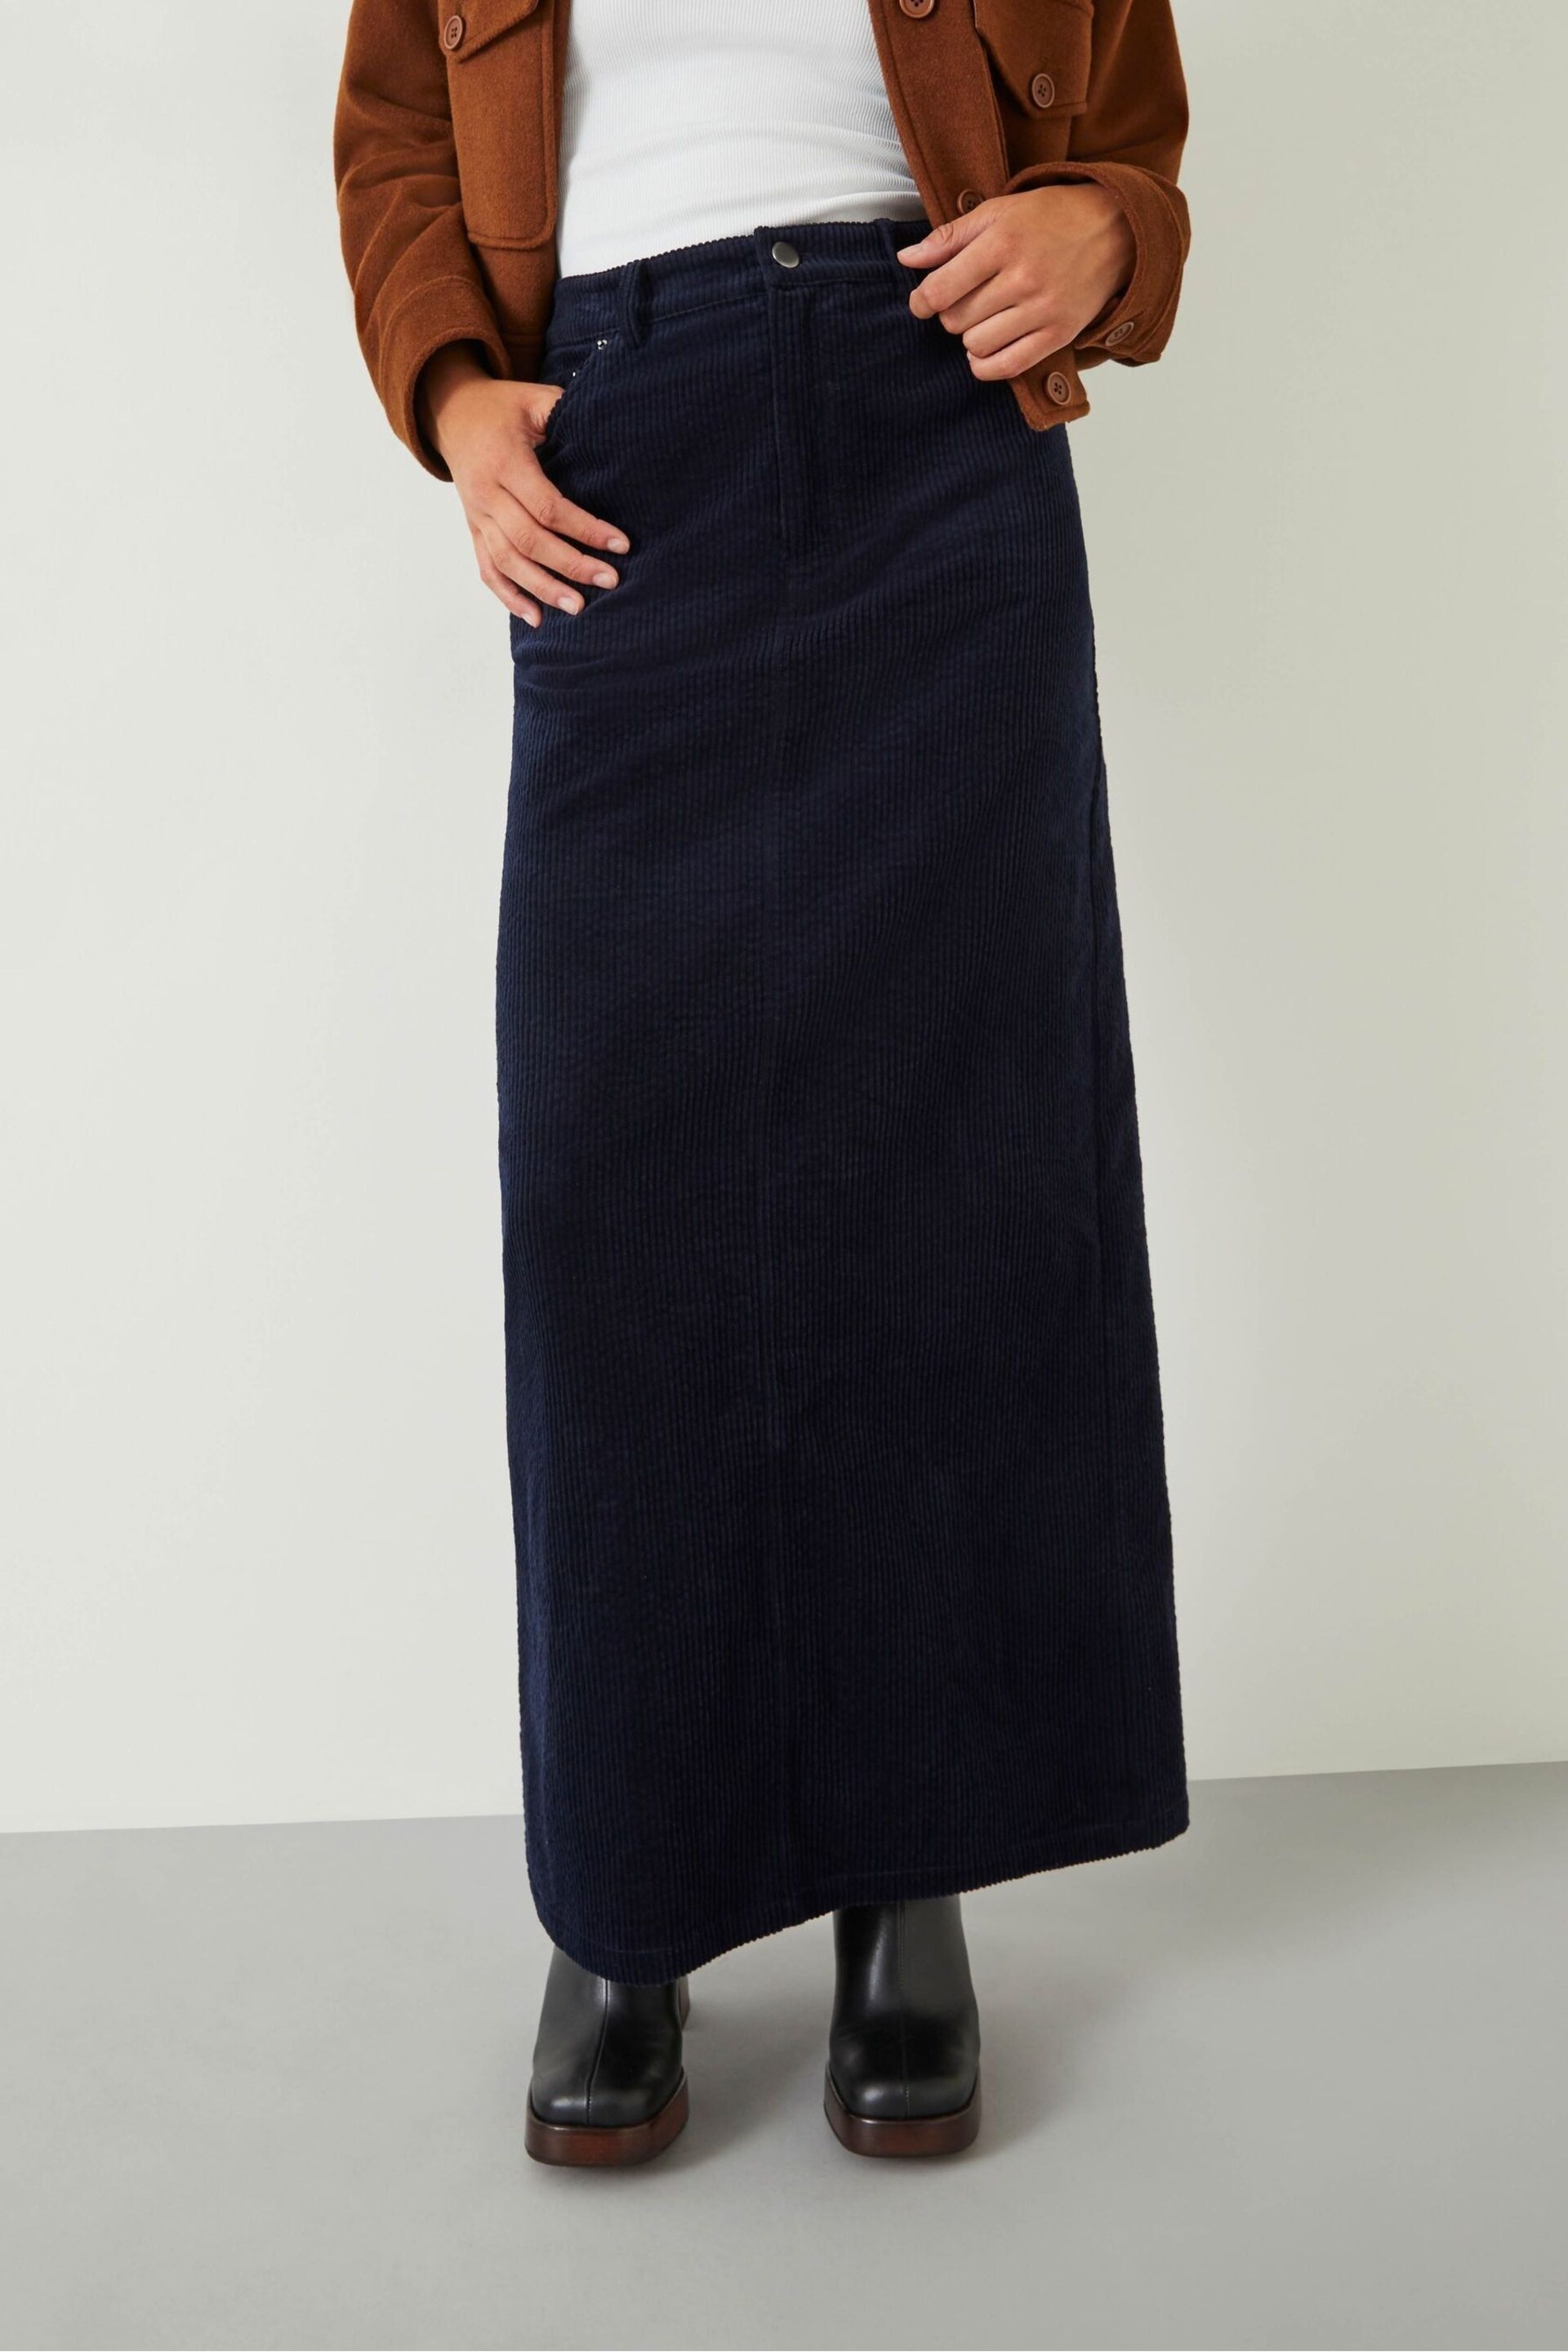 Hush Blue Alanna Cord Maxi Skirt - Image 1 of 5